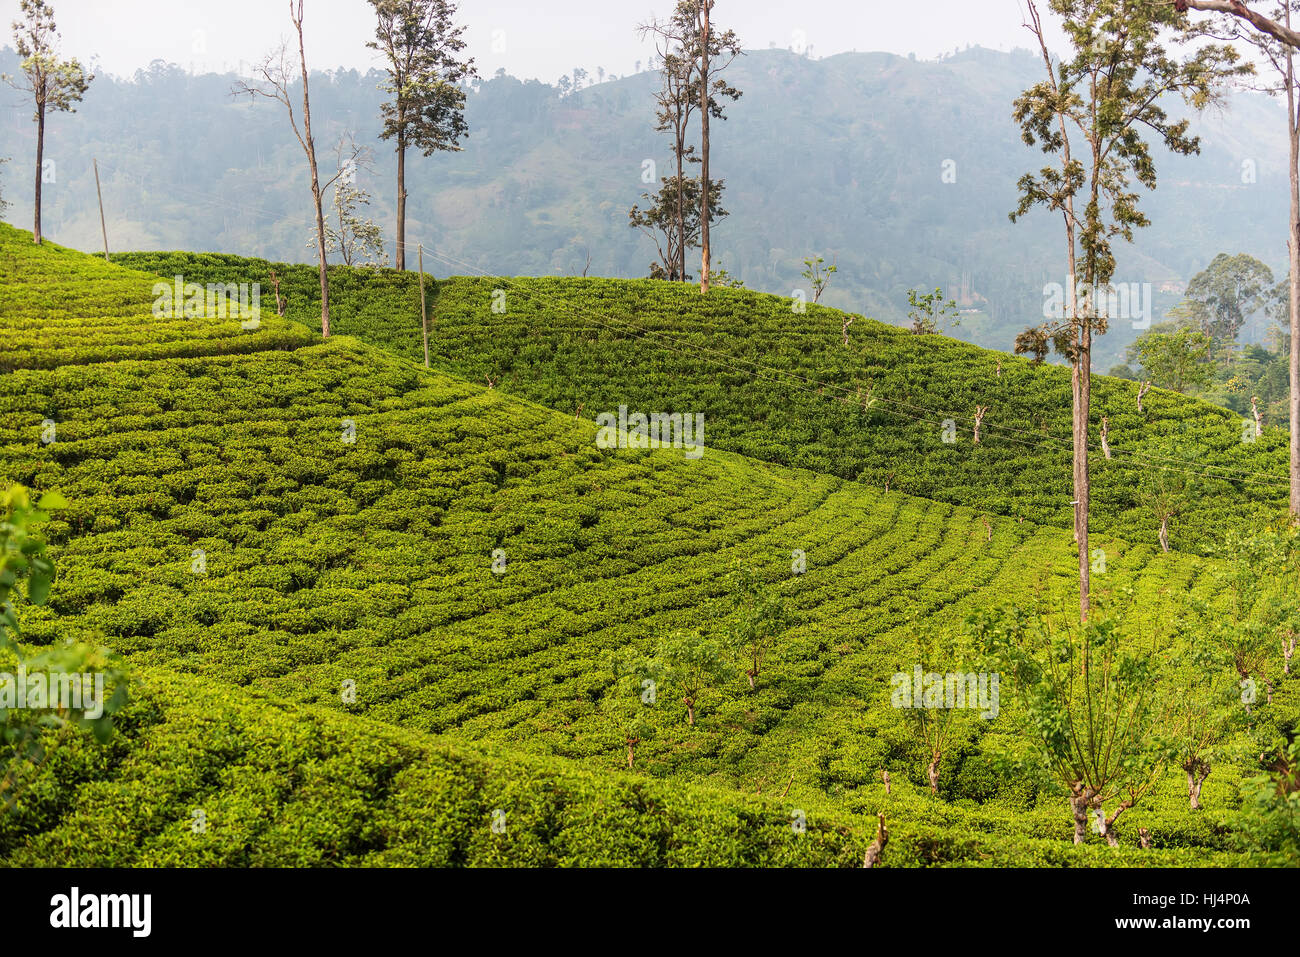 Sri Lanka: highland Ceylon tea fields in Ella Stock Photo